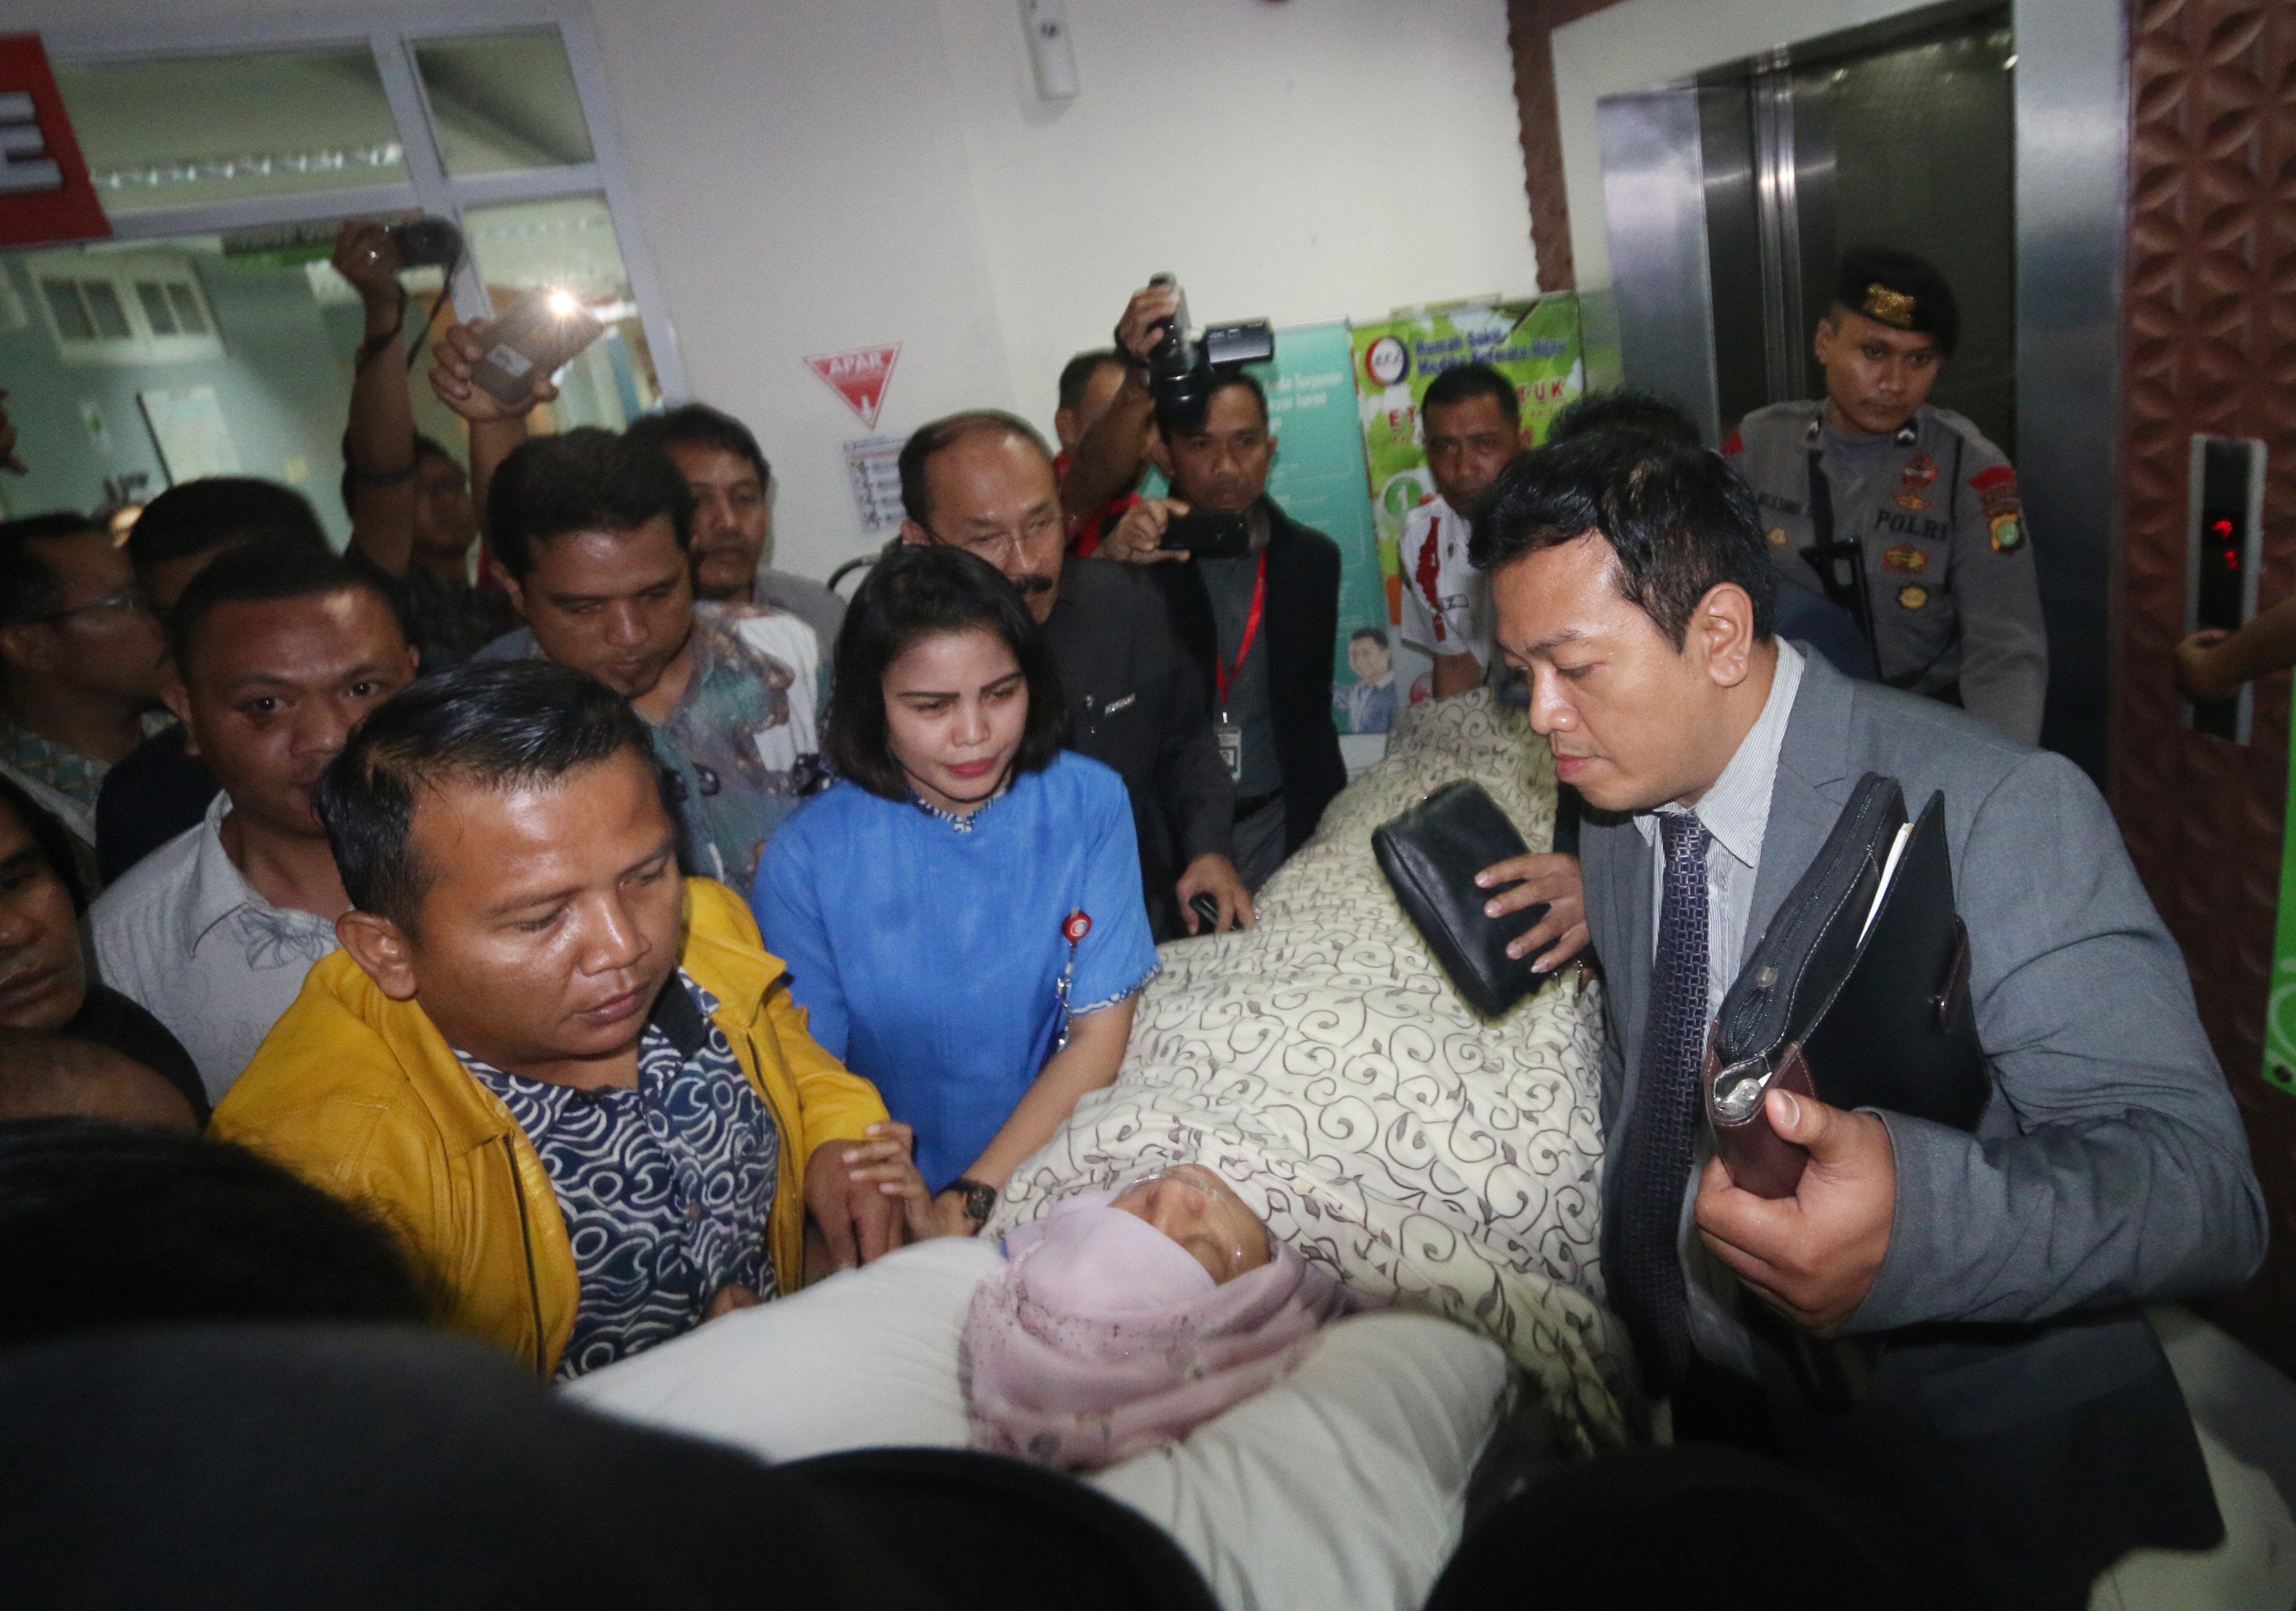 DIBAWA KELUAR. Ketua DPR Setya Novanto dibawa keluar dari Rumah Sakit Medika Permata Hijau, Jakarta, Jumat, 17 November. Foto oleh Wibowo Armando/ANTARA 